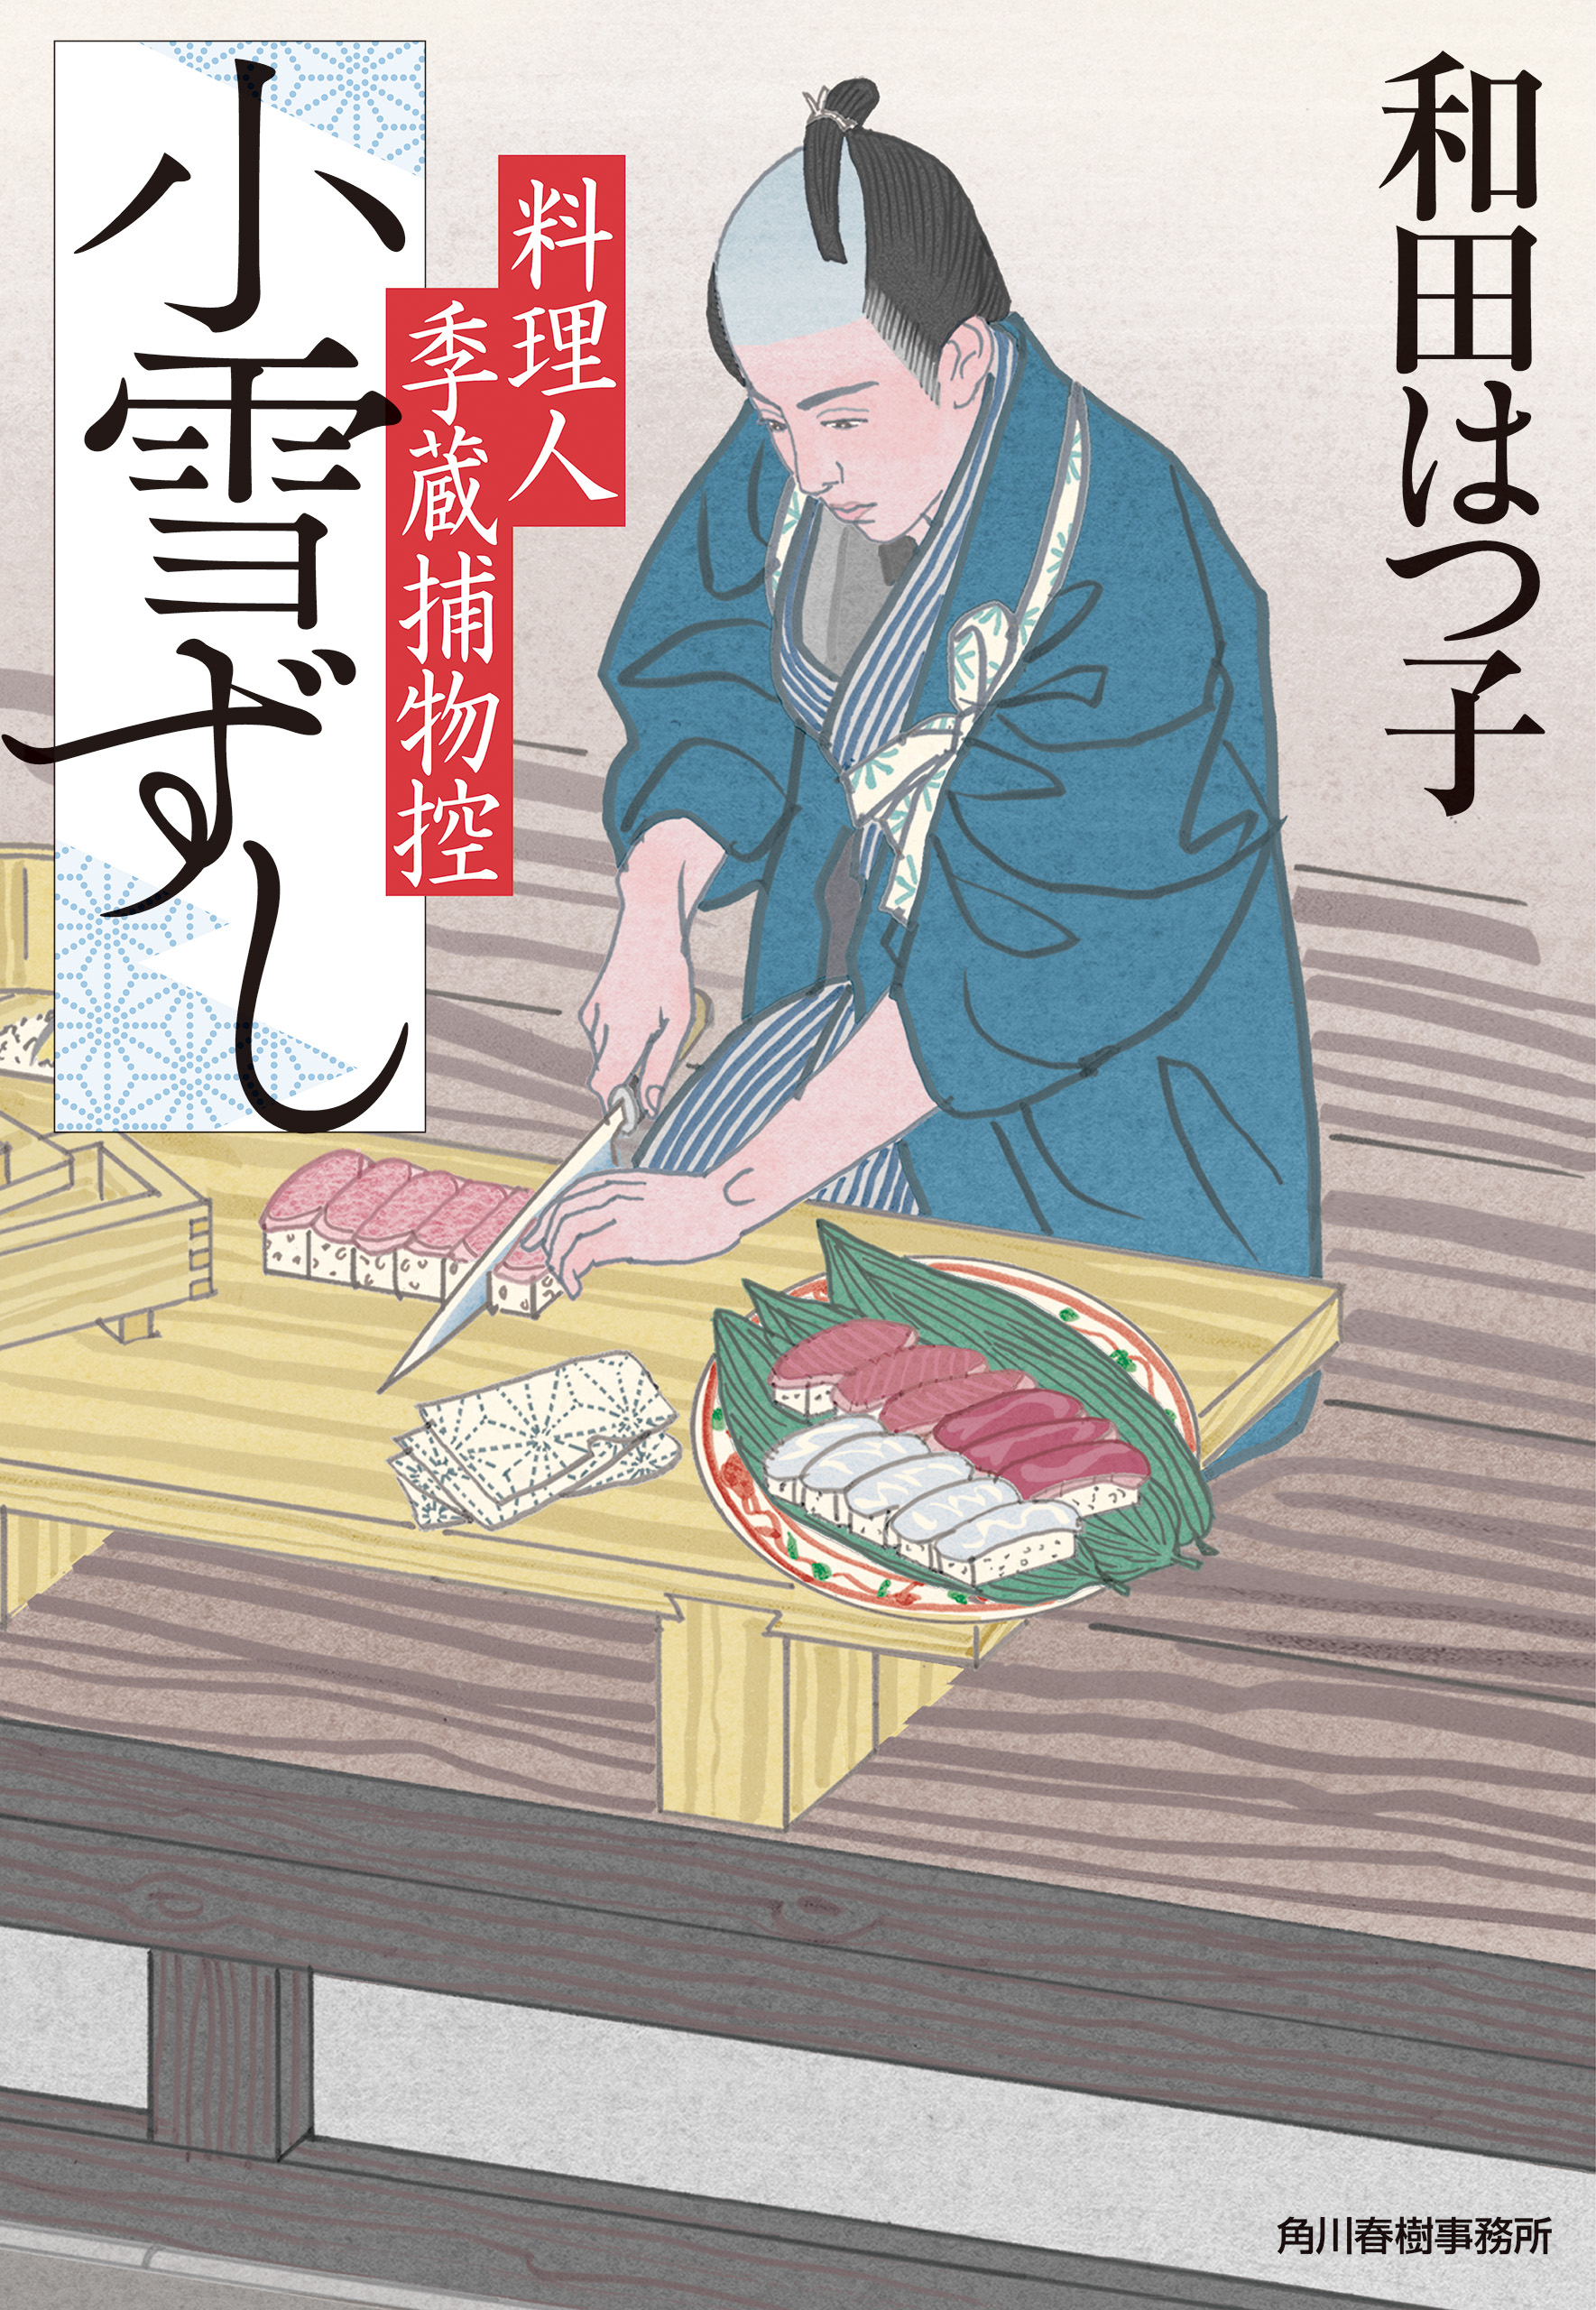 小雪ずし 料理人季蔵捕物控 - 和田はつ子 - 小説・無料試し読みなら、電子書籍・コミックストア ブックライブ